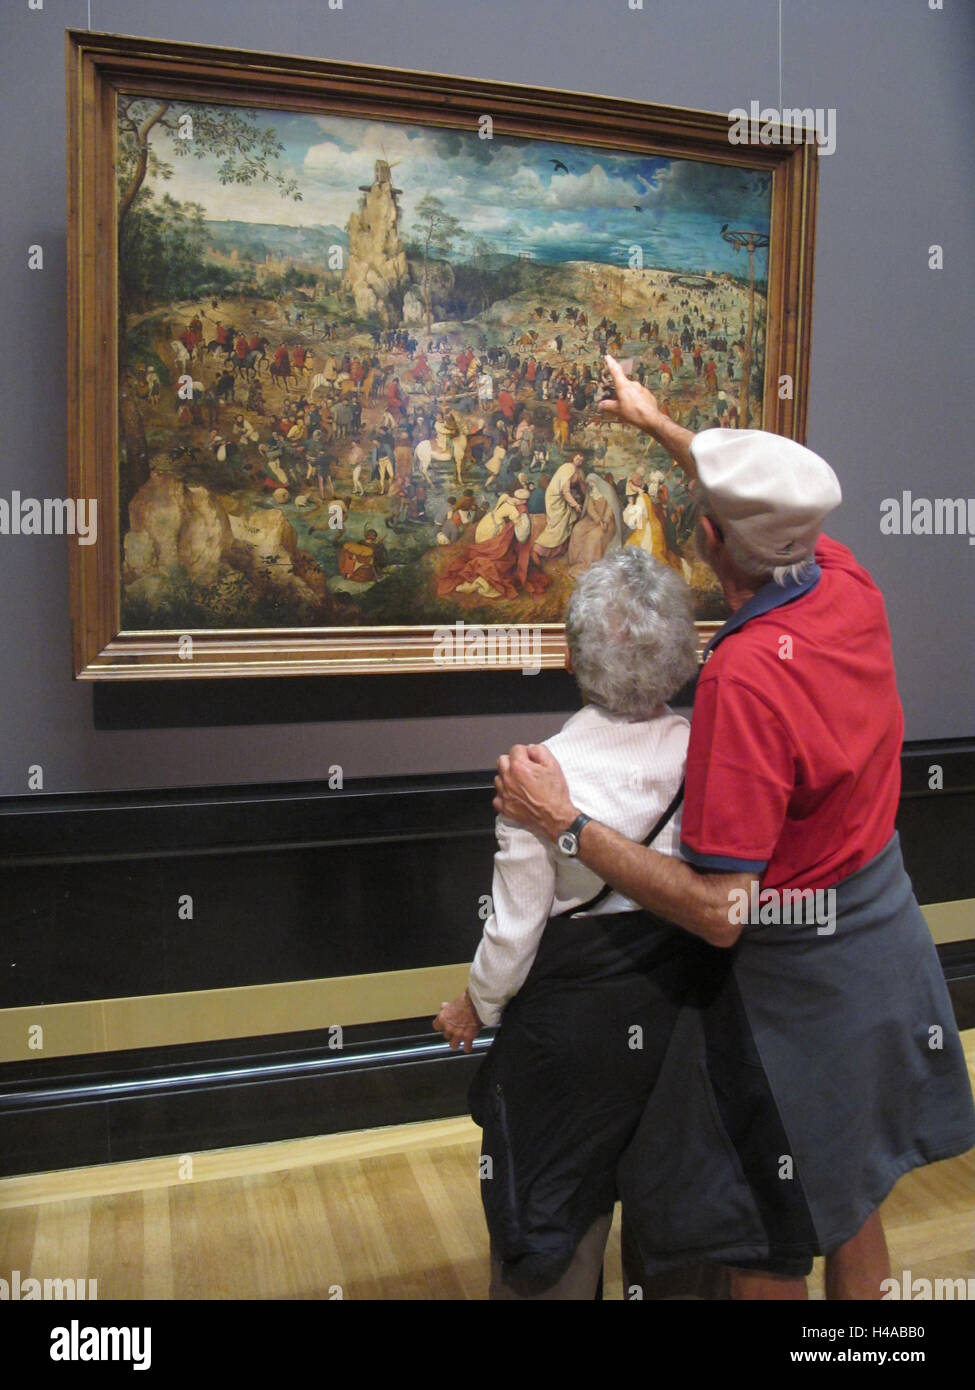 Museum der Geschichte der Kunst, Gemälde von Pieter Bruegel dem alten Menschen, "Die Kreuztragung Christi" von 1564, Besucher betrachten. Stockfoto